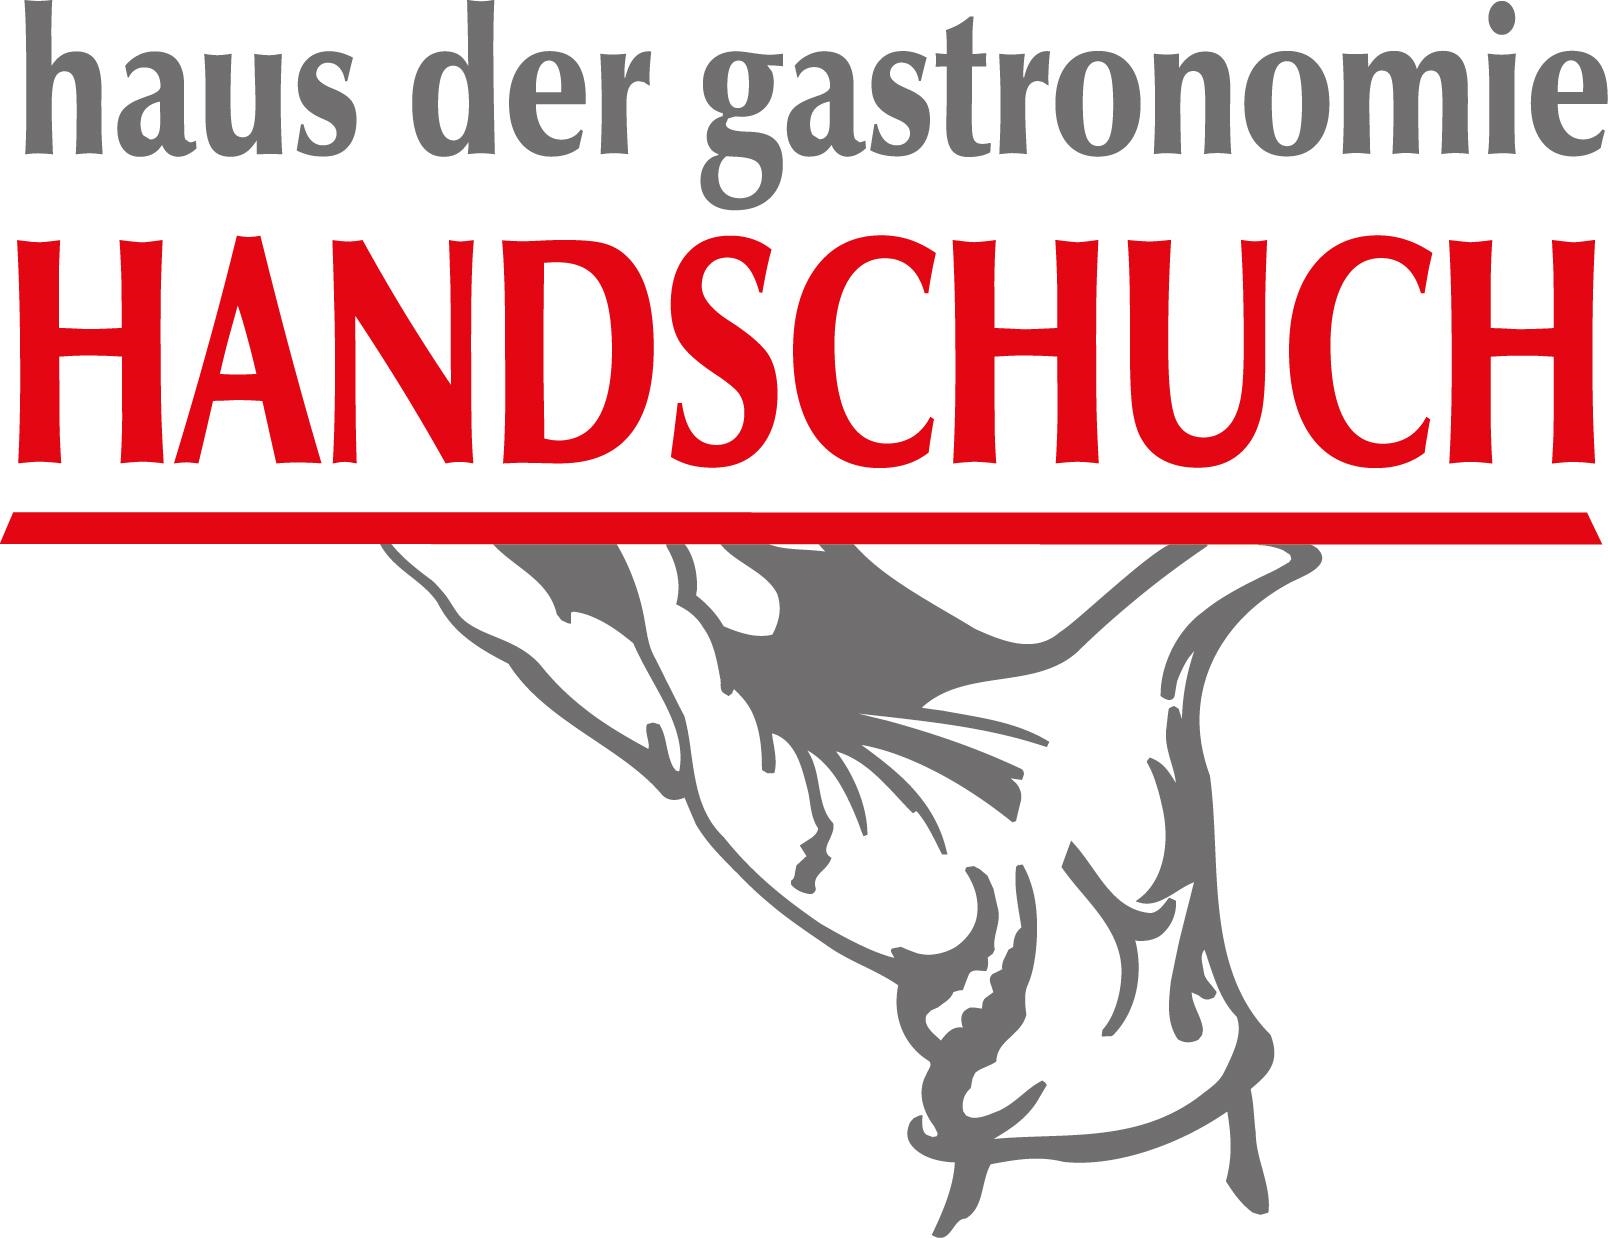 Handschuch Logo